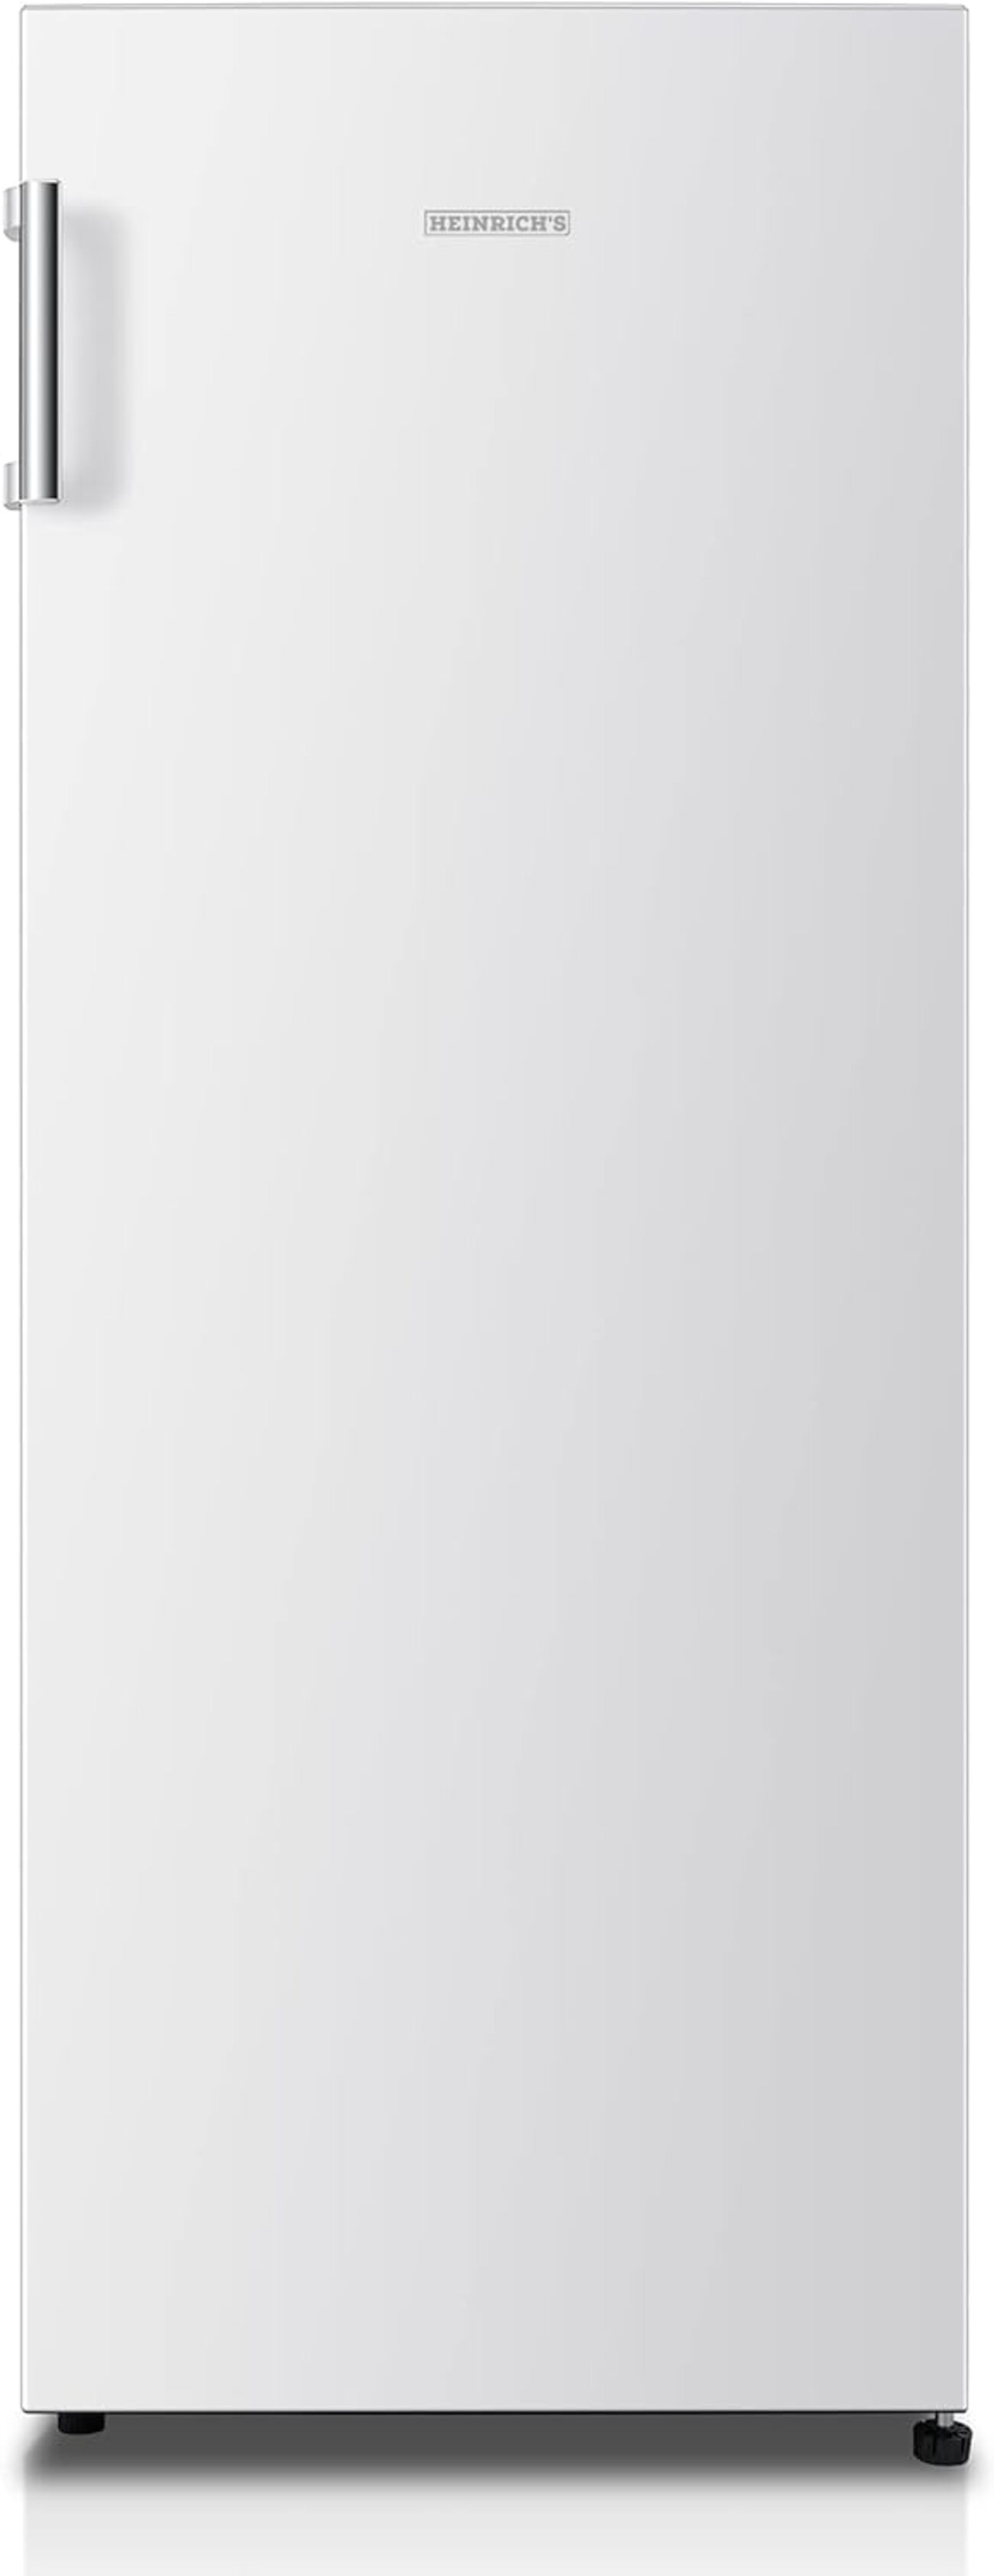 242L, Kühlschrank Vollraumkühlschrank, HEINRICHS freistehender Kühlschrank LED-Beleuchtung, 143,4 cm (E, hoch, HEINRICHS weiss)